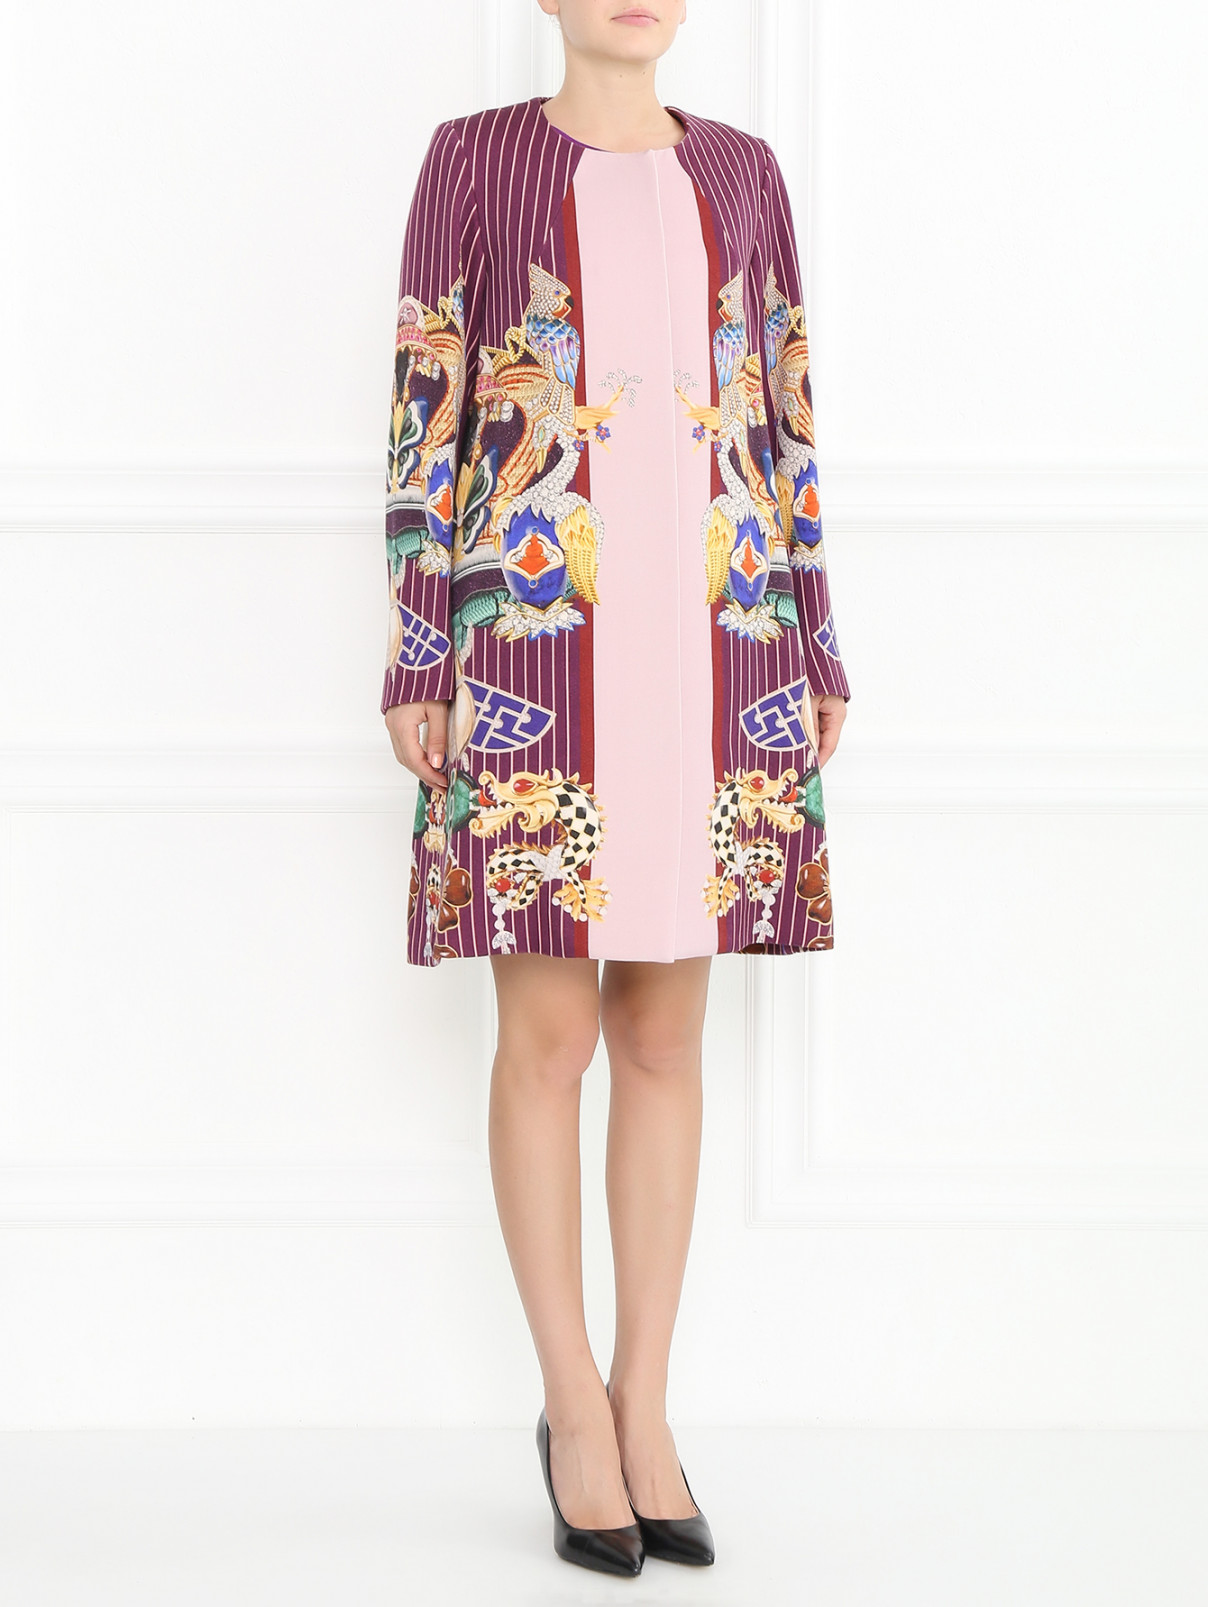 Однобортное пальто из шерсти с узором Mary Katrantzou  –  Модель Общий вид  – Цвет:  Узор